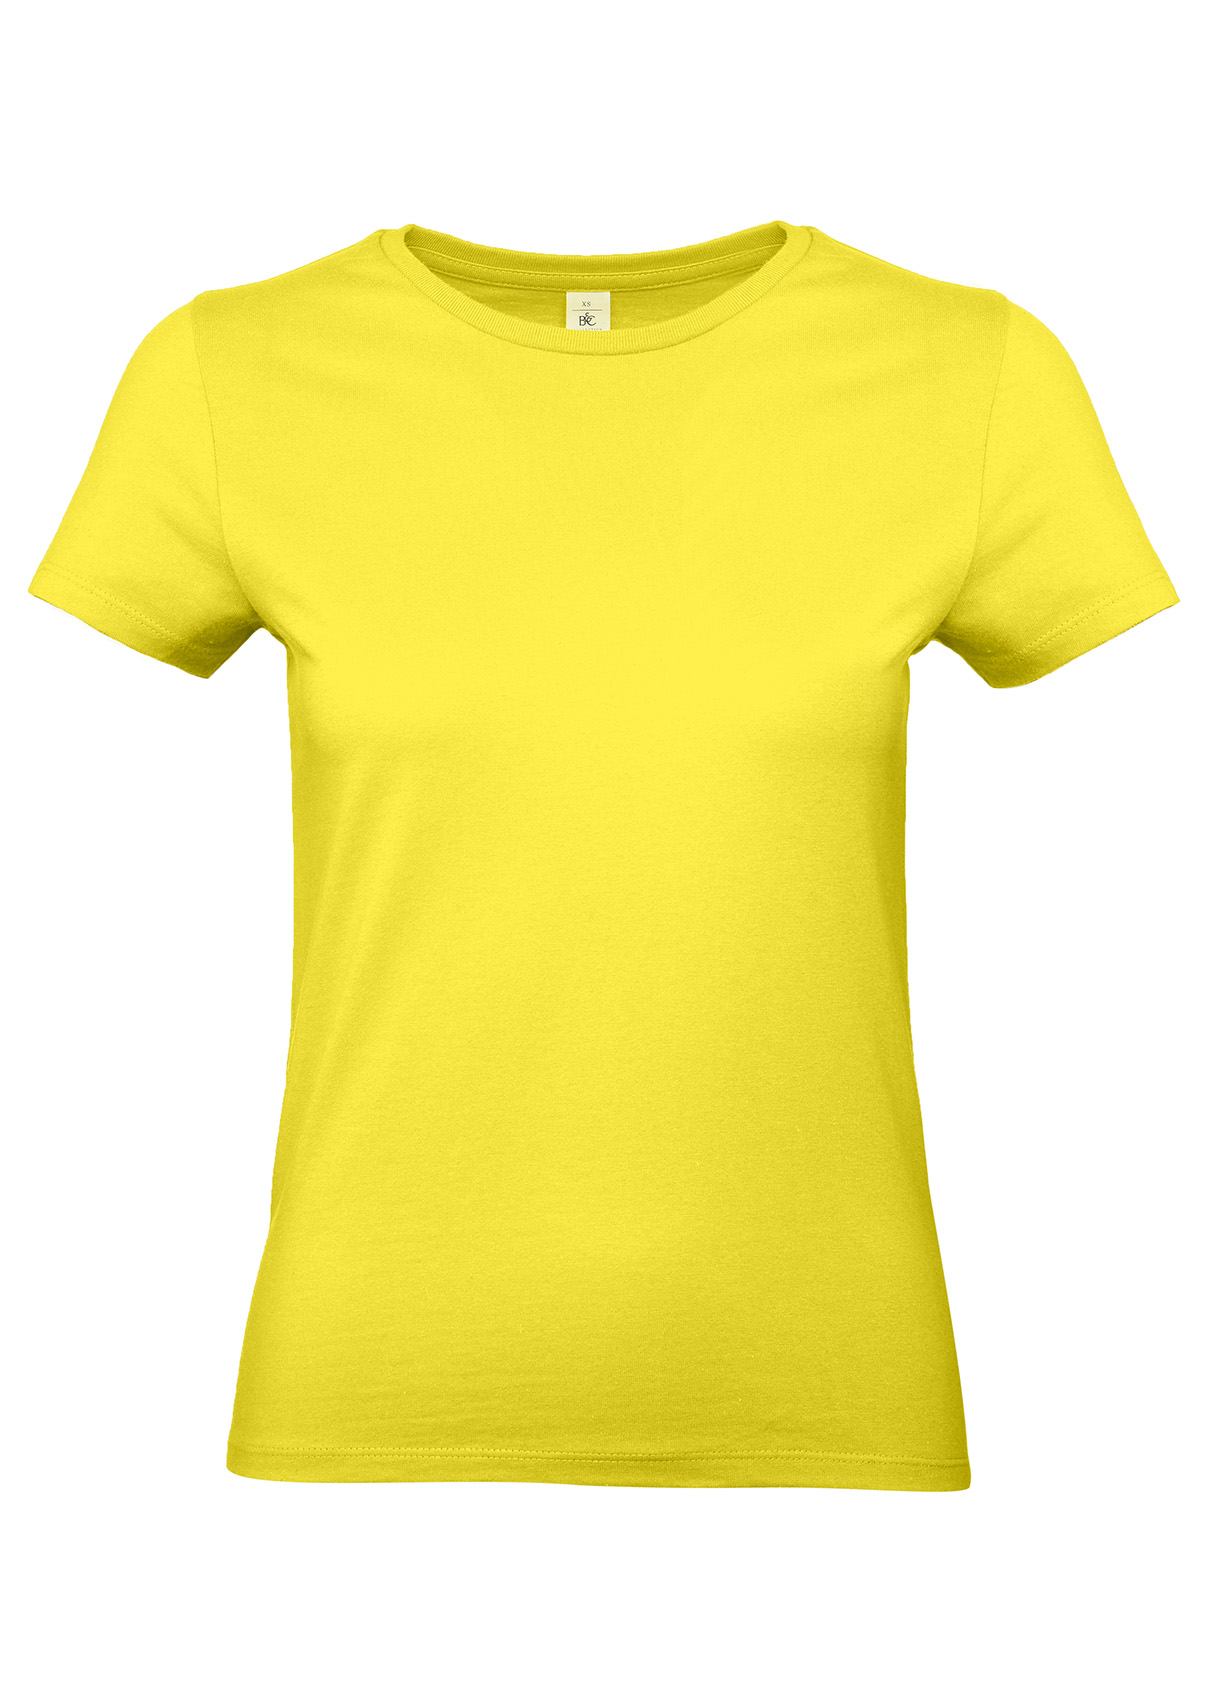 T-shirt FEMME 100% Coton